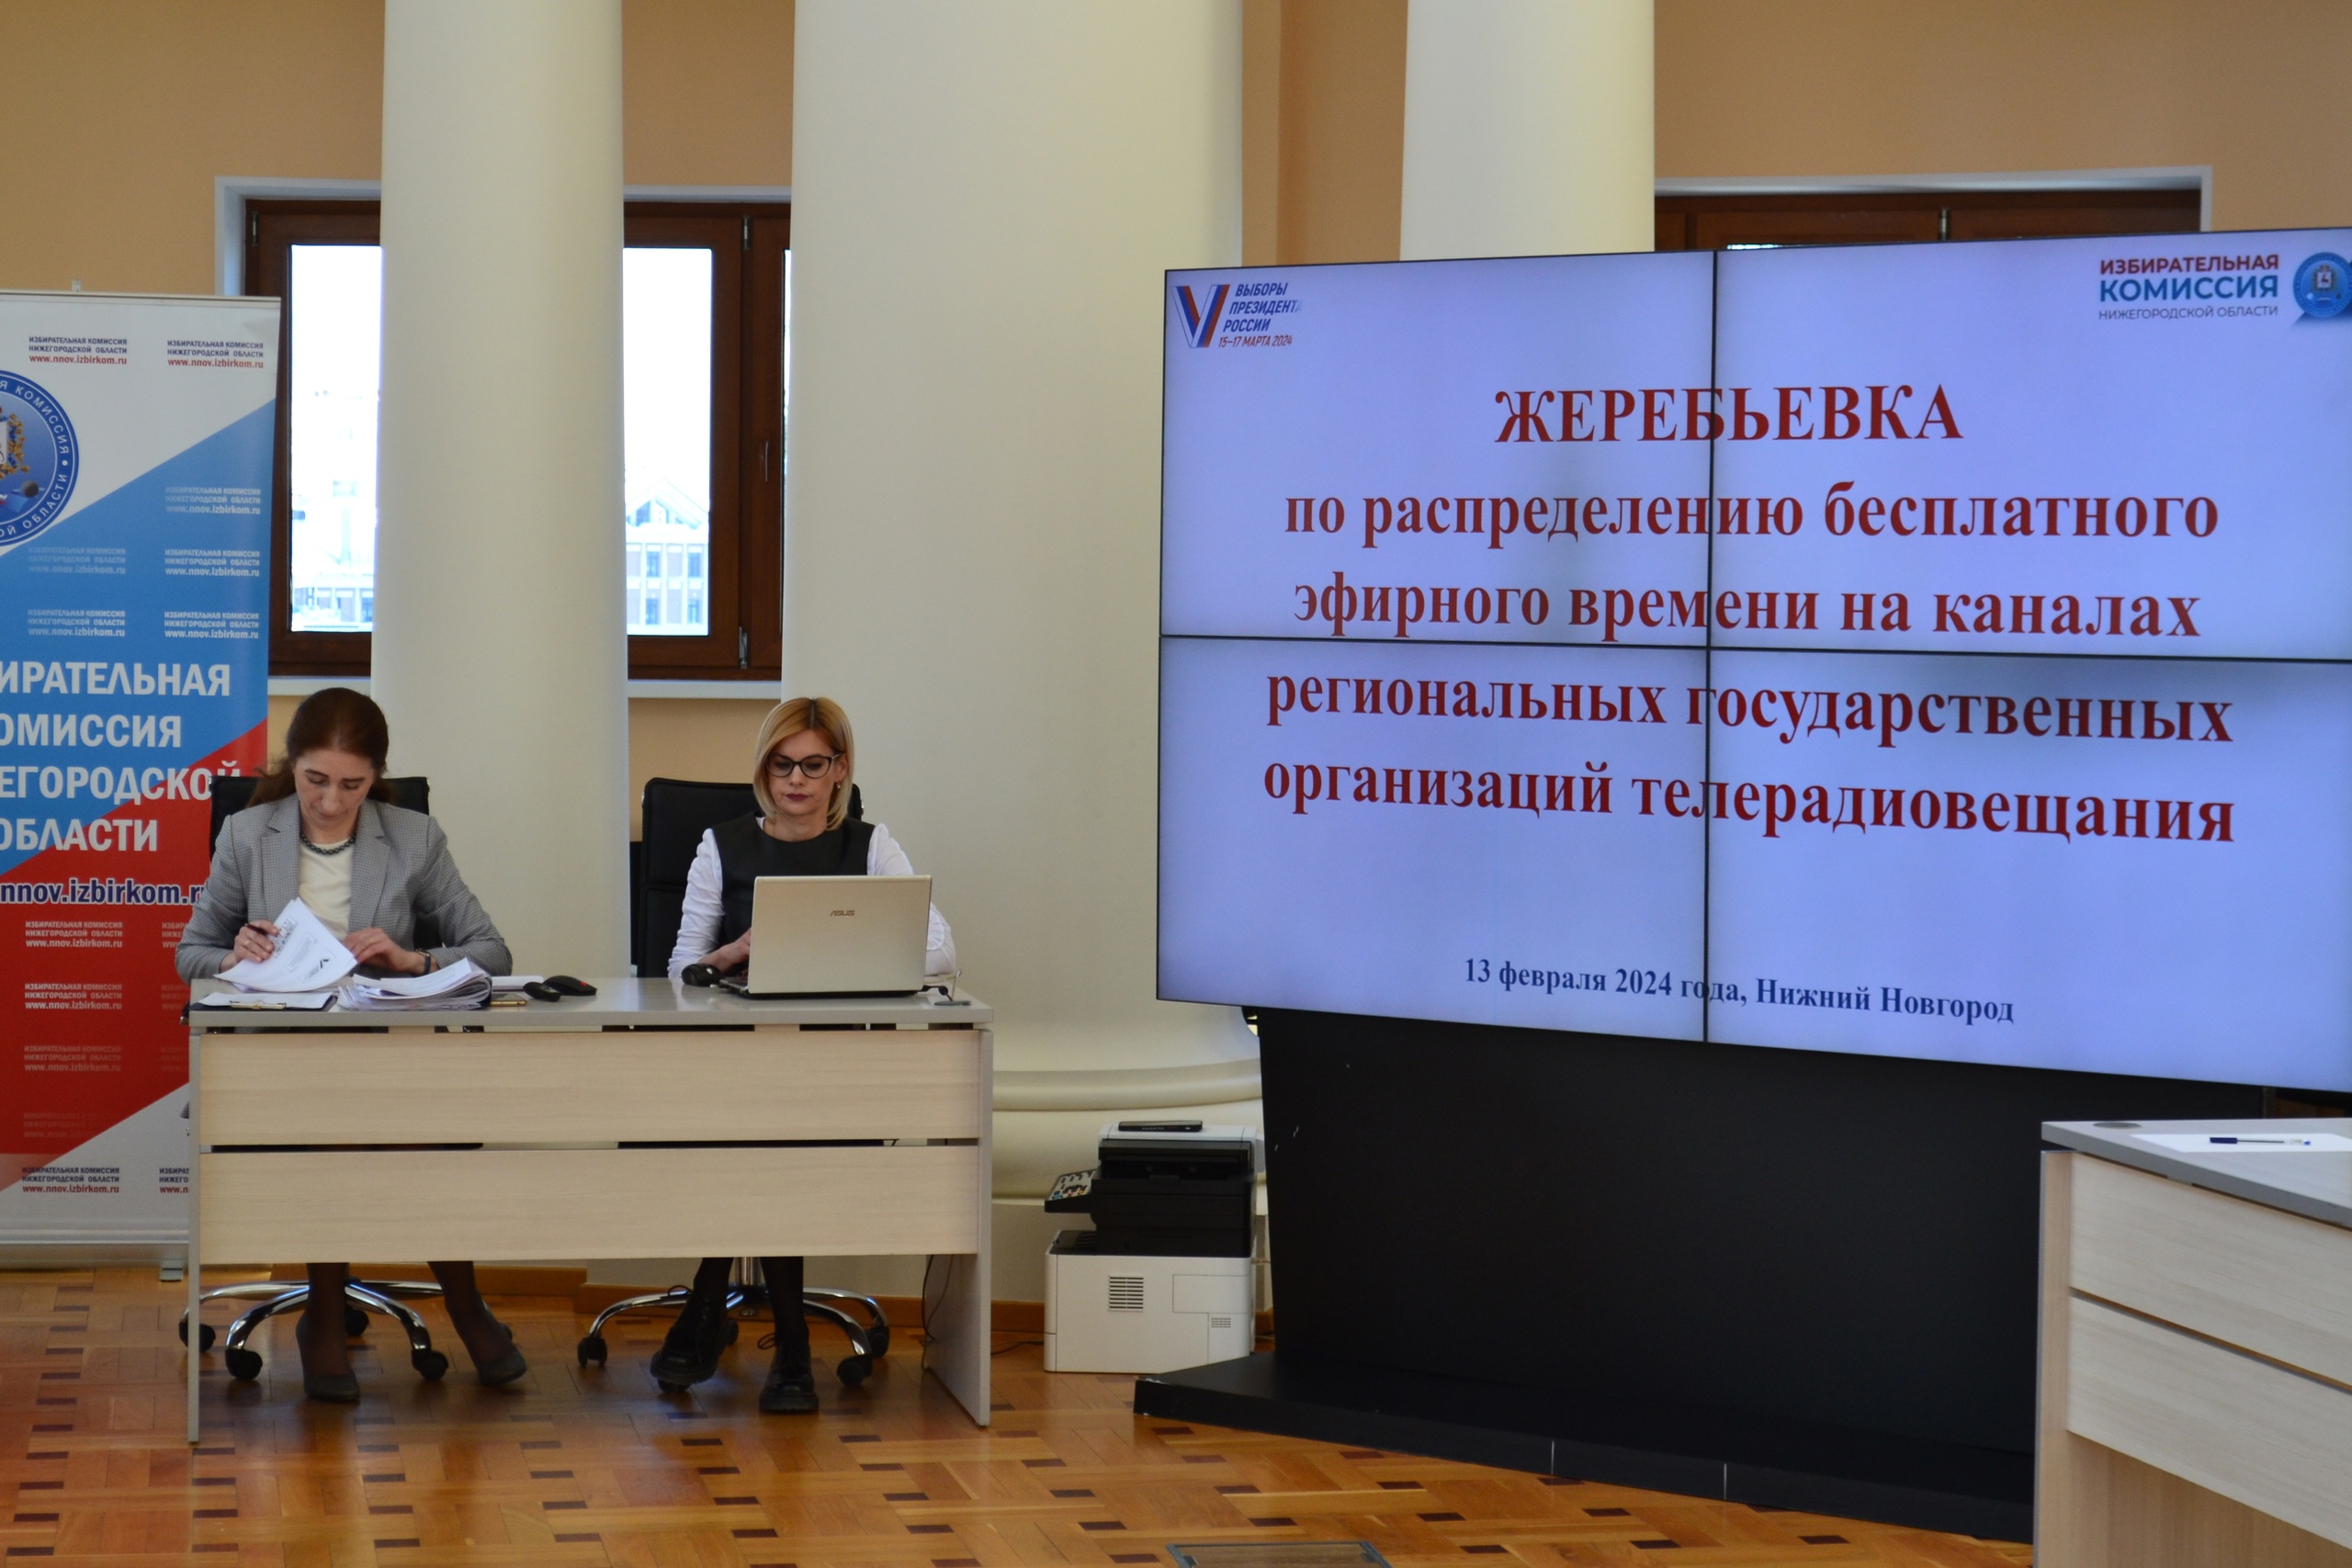 Избирком Нижегородской области завершил жеребьёвку по распределению бесплатного эфирного времени